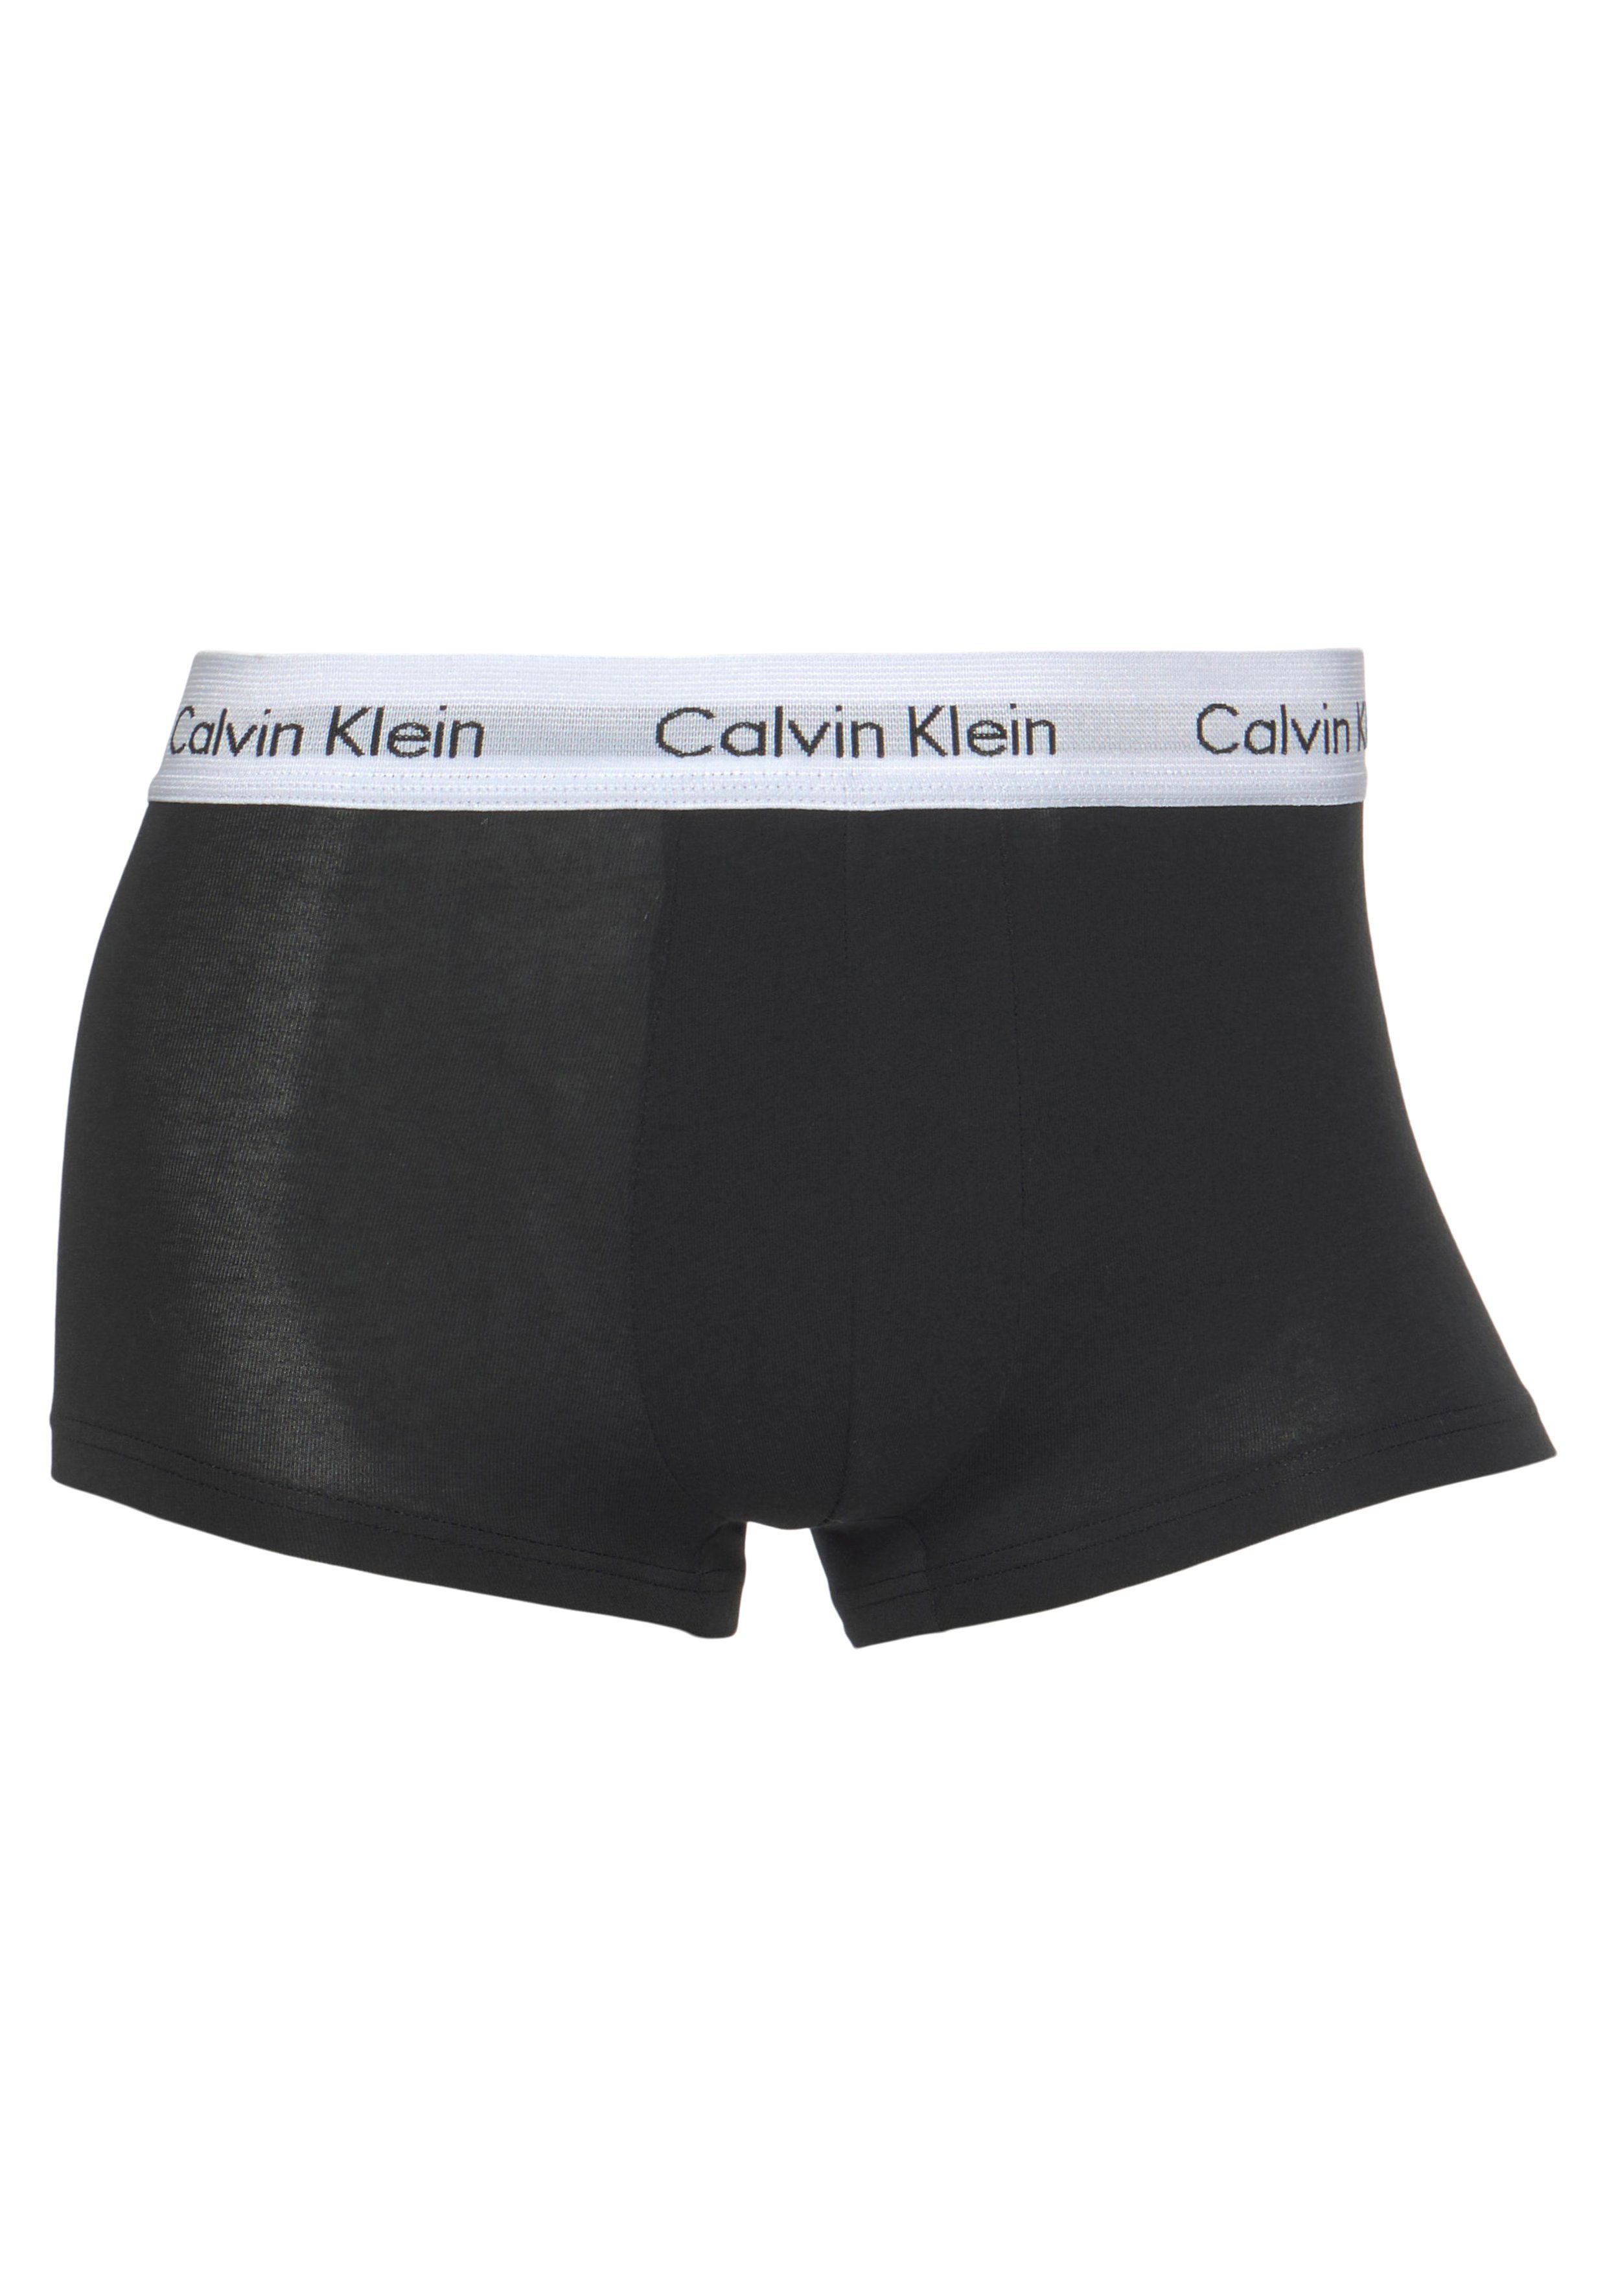 grau-meliert, Underwear schwarz, (3-St) Klein weiß Hipster weißem mit Webbund Calvin